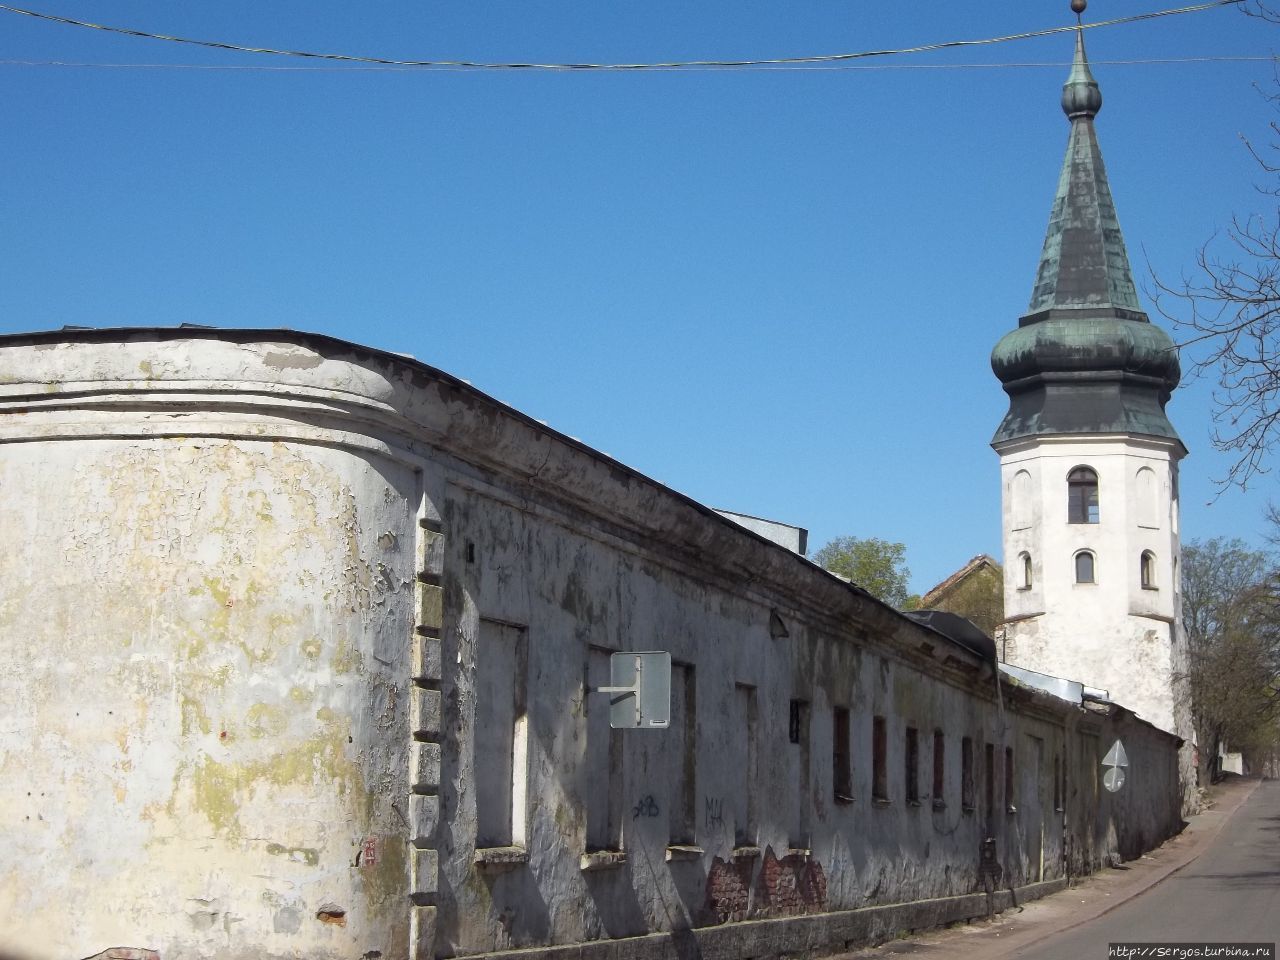 башня ратуши и артиллерийские казармы (конец ХVвека) являлись фрагментом средневековой оборонит. стены Выборг, Россия